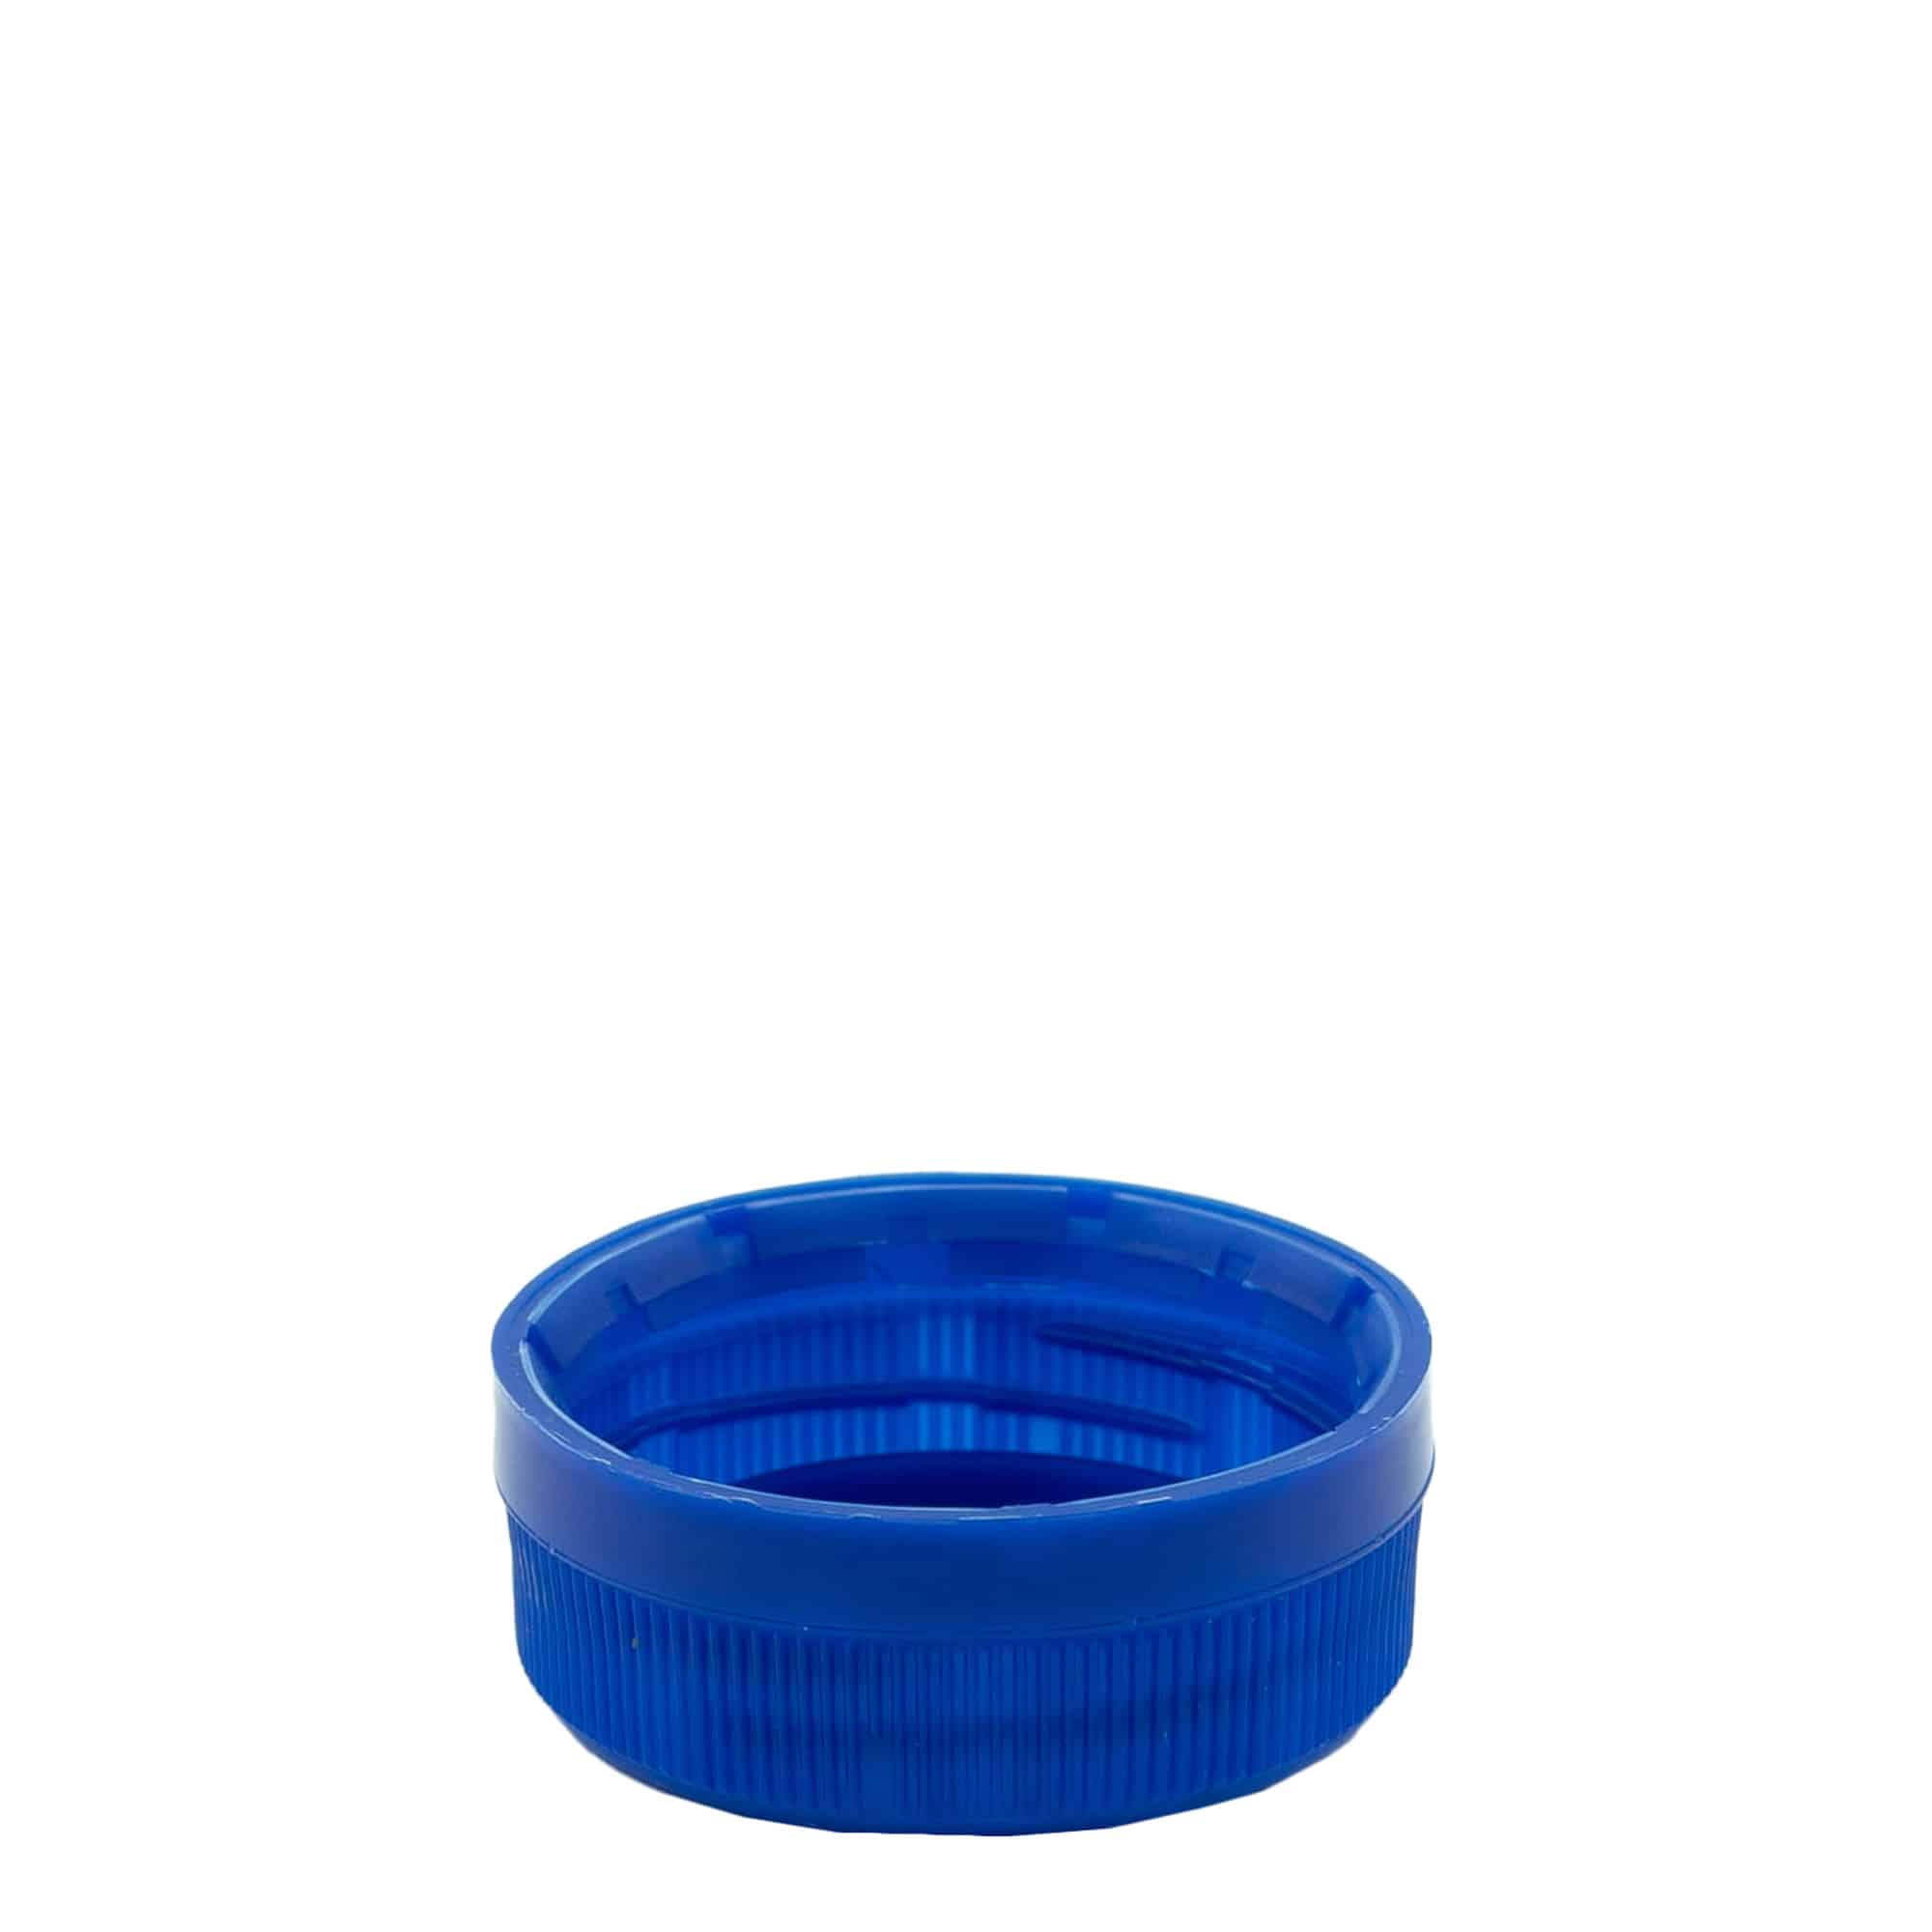 Zakrętka gwint dwustopniowy, tworzywo sztuczne PE, kolor niebieski, do zamknięcia: PET 38 mm